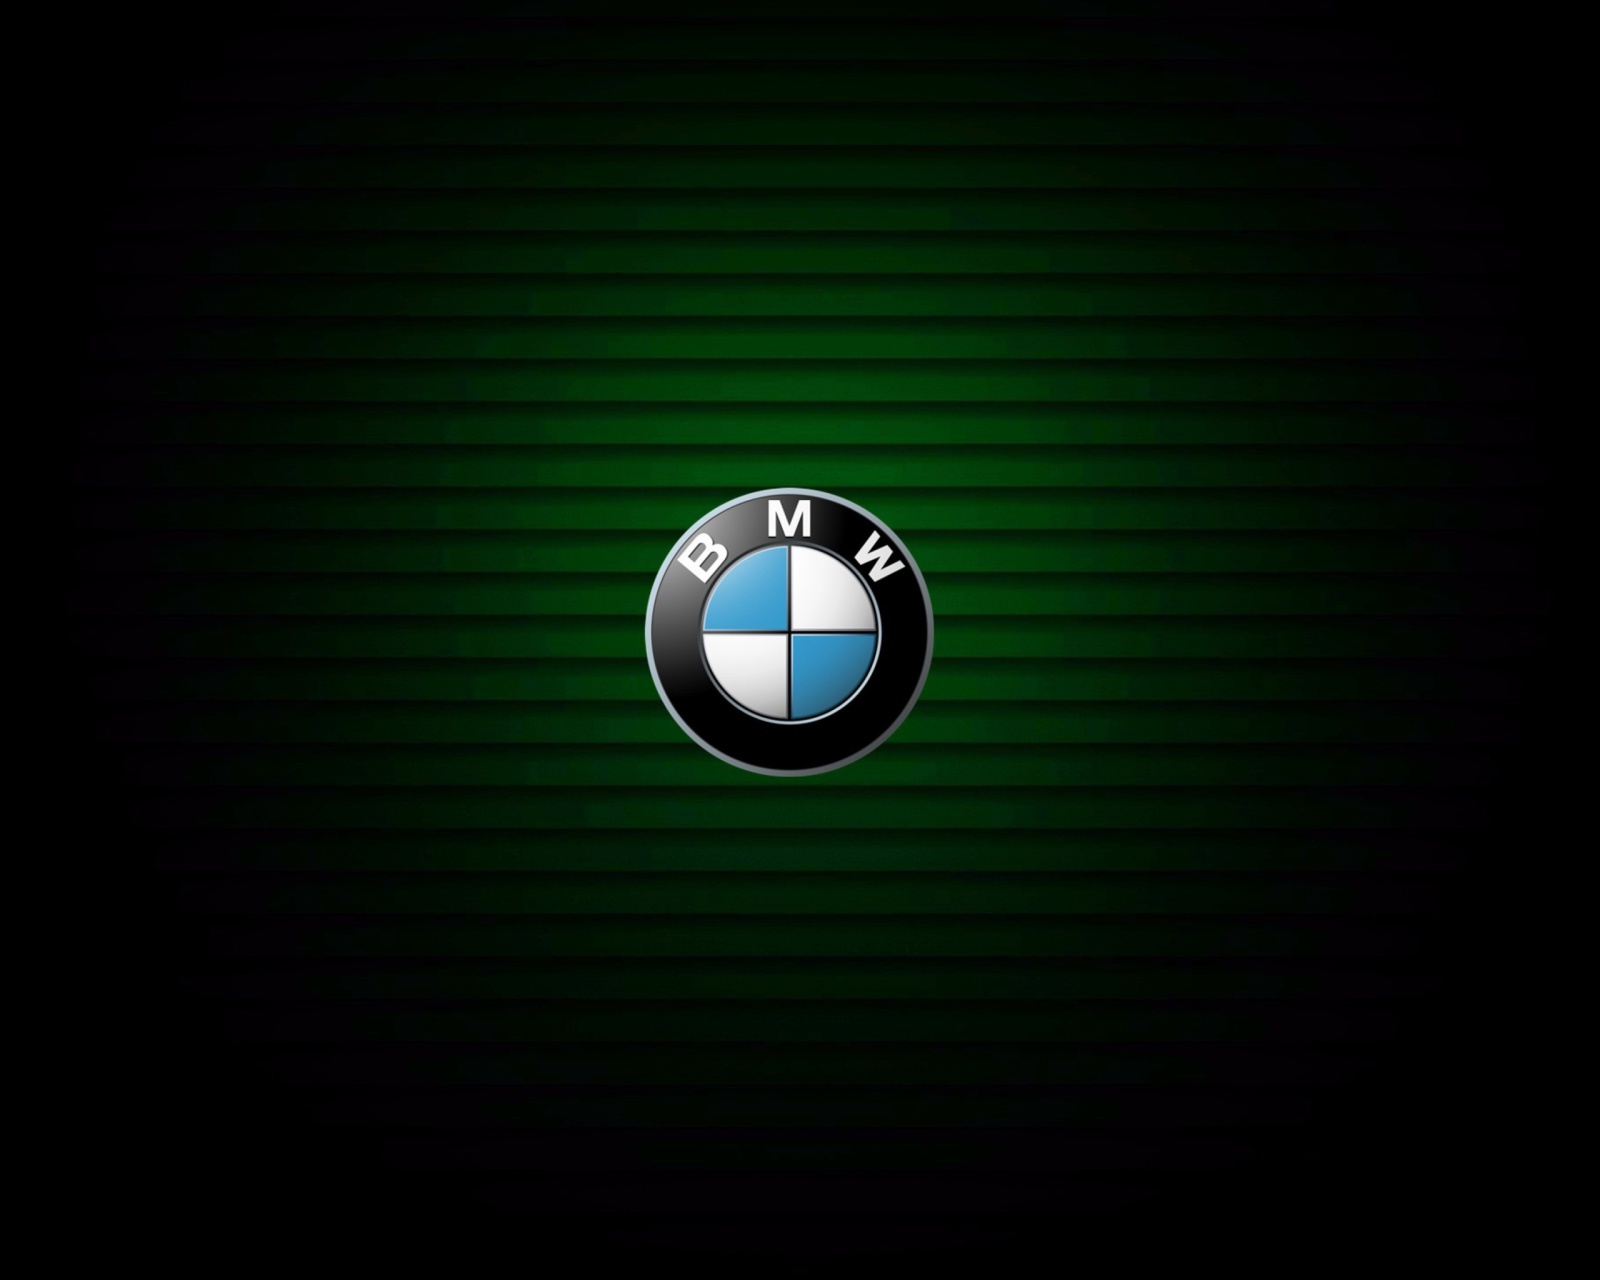 Das BMW Emblem Wallpaper 1600x1280